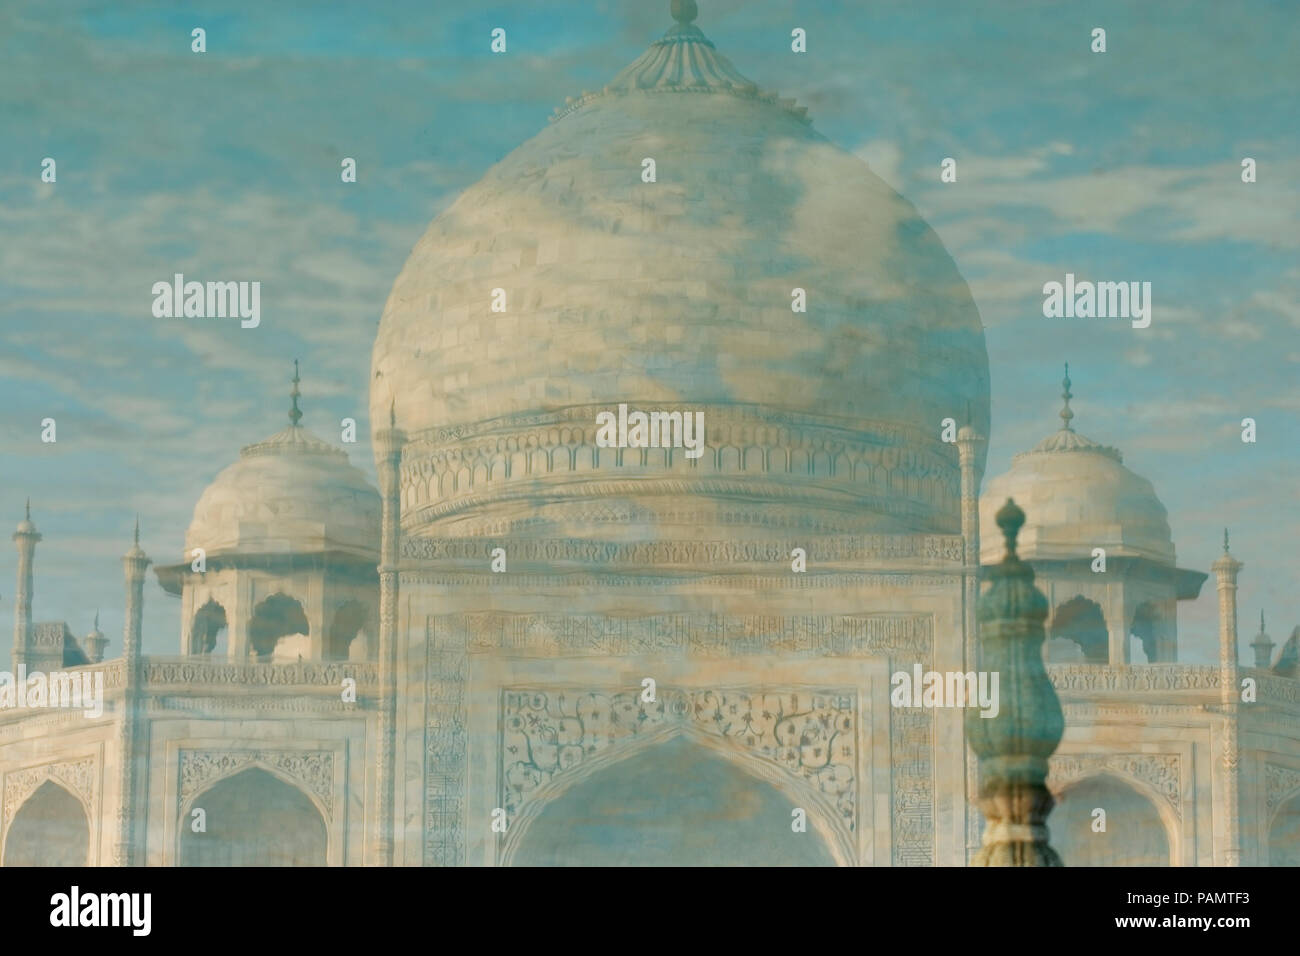 Taj Mahal reflection in acqua a Agra un Sito Patrimonio Mondiale dell'UNESCO, un monumento di amore, di Agra, Uttar Pradesh, India. Foto Stock